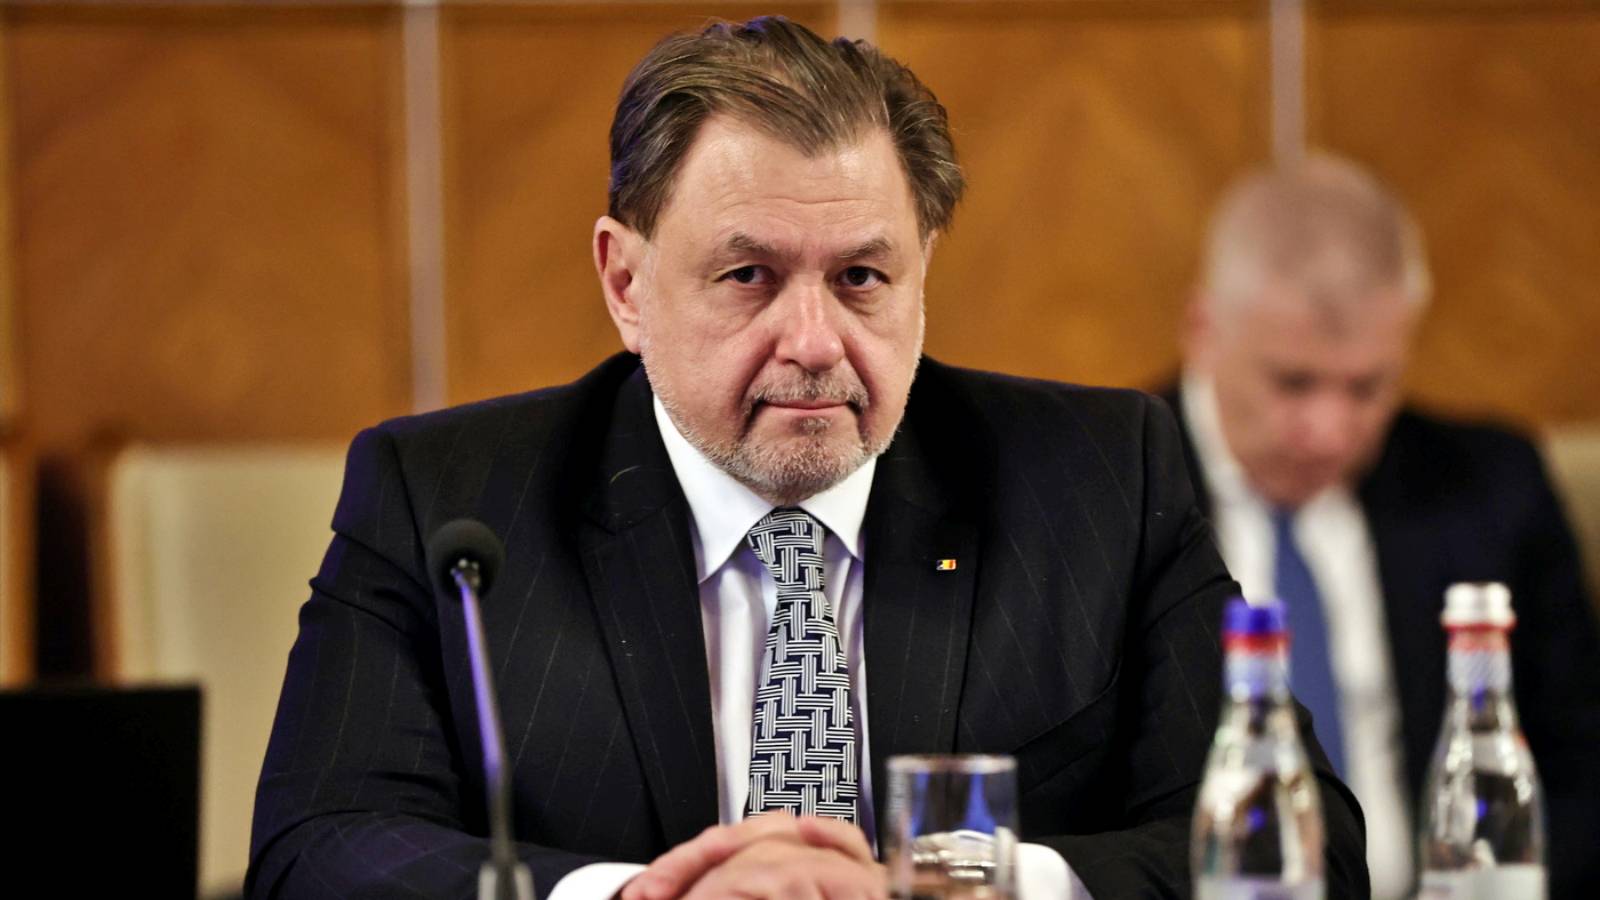 Gesundheitsminister 2 Sehr WICHTIGE offizielle Ankündigungen Aufmerksamkeit für Millionen von Rumänen im Land